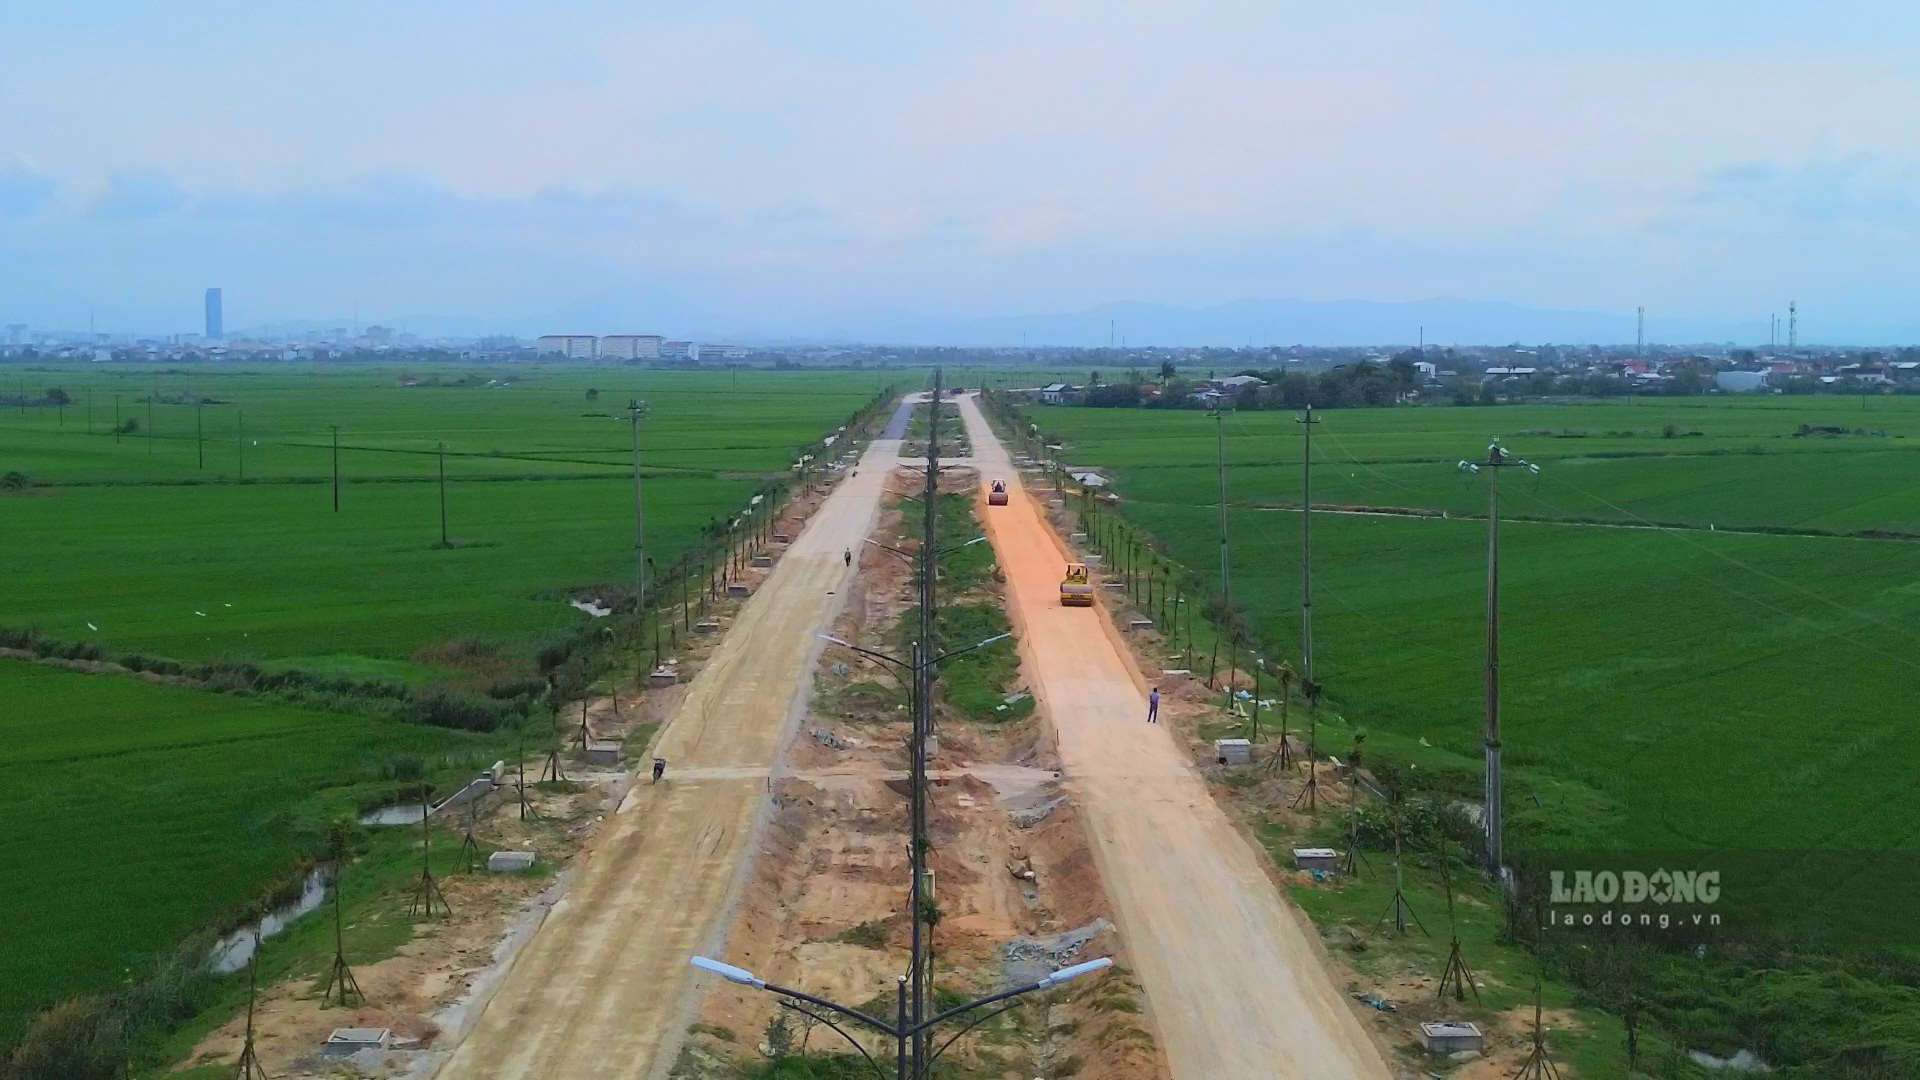 Theo đó, Dự án đường Chợ Mai - Tân Mỹ được UBND tỉnh Thừa Thiên Huế phê duyệt đầu tư tháng 10.2016 với tổng chiều dài gần 5km. Quy mô mặt cắt ngang tuyến hoàn chỉnh theo quy hoạch với nền đường 36m.